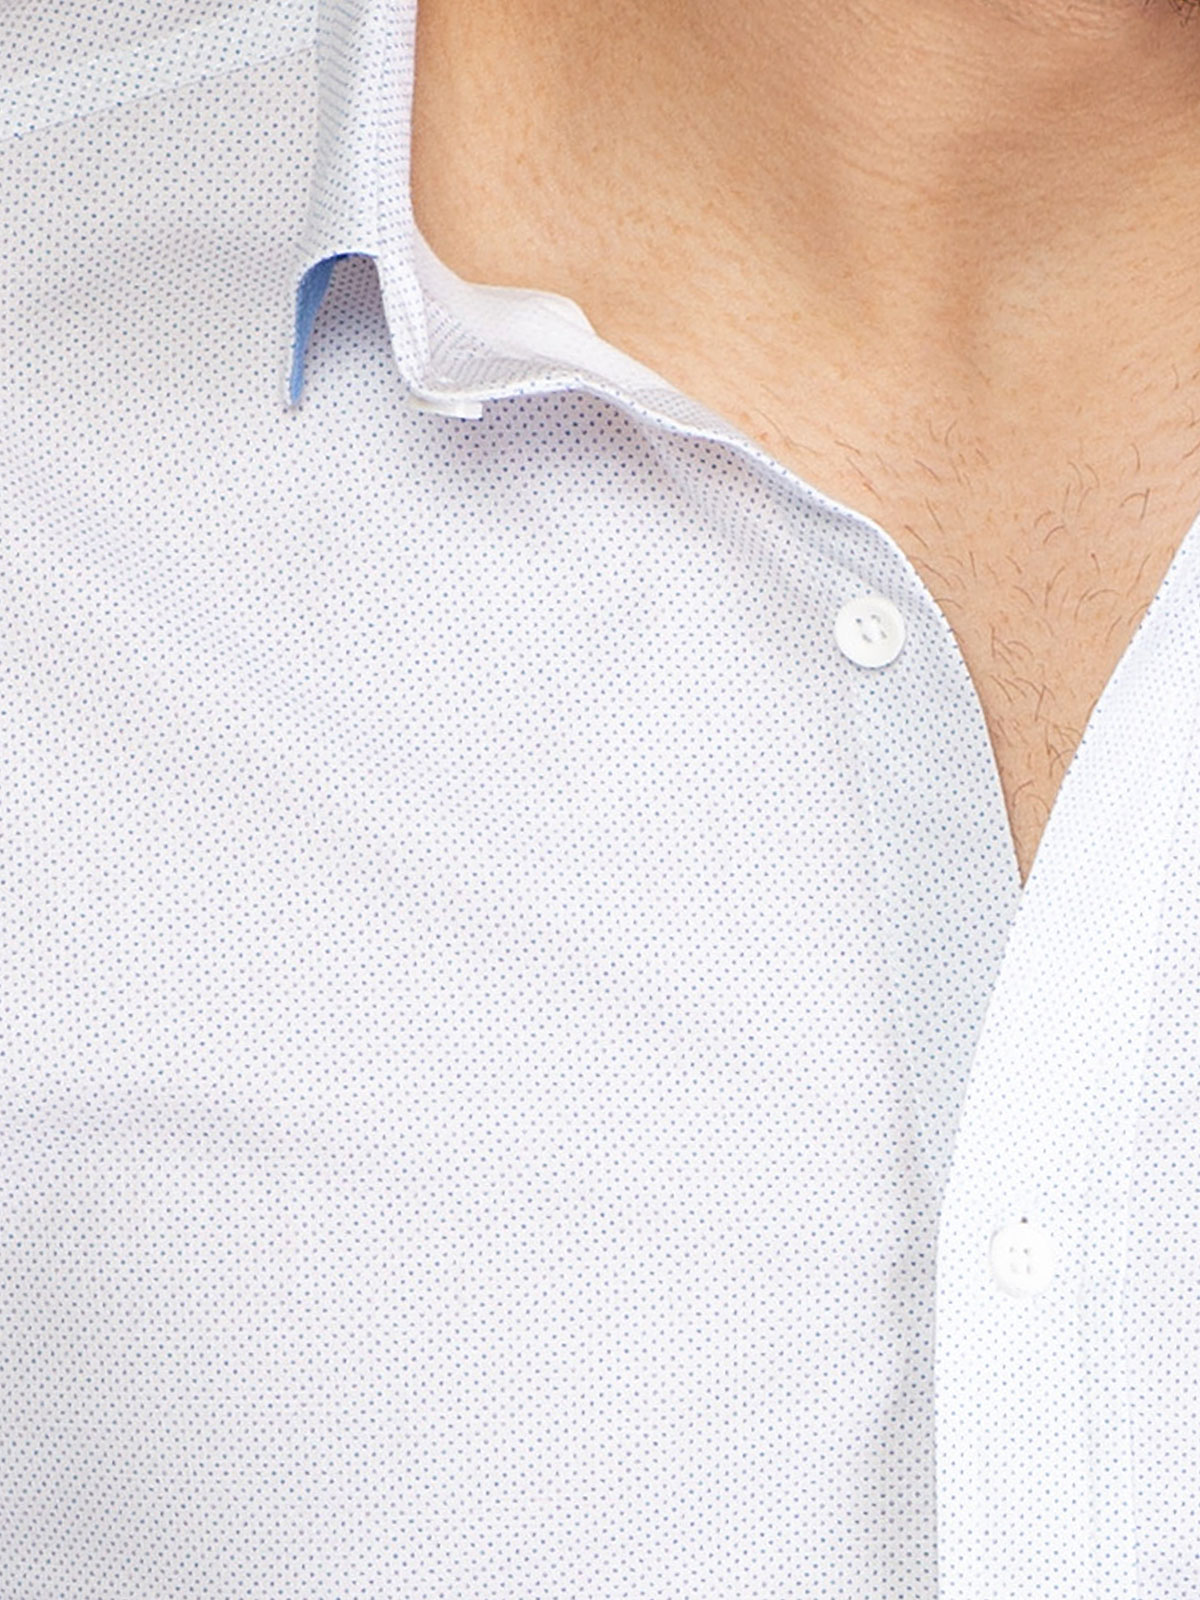 Бяла риза на ситни светло сини точки - 21502 72.00 лв img3